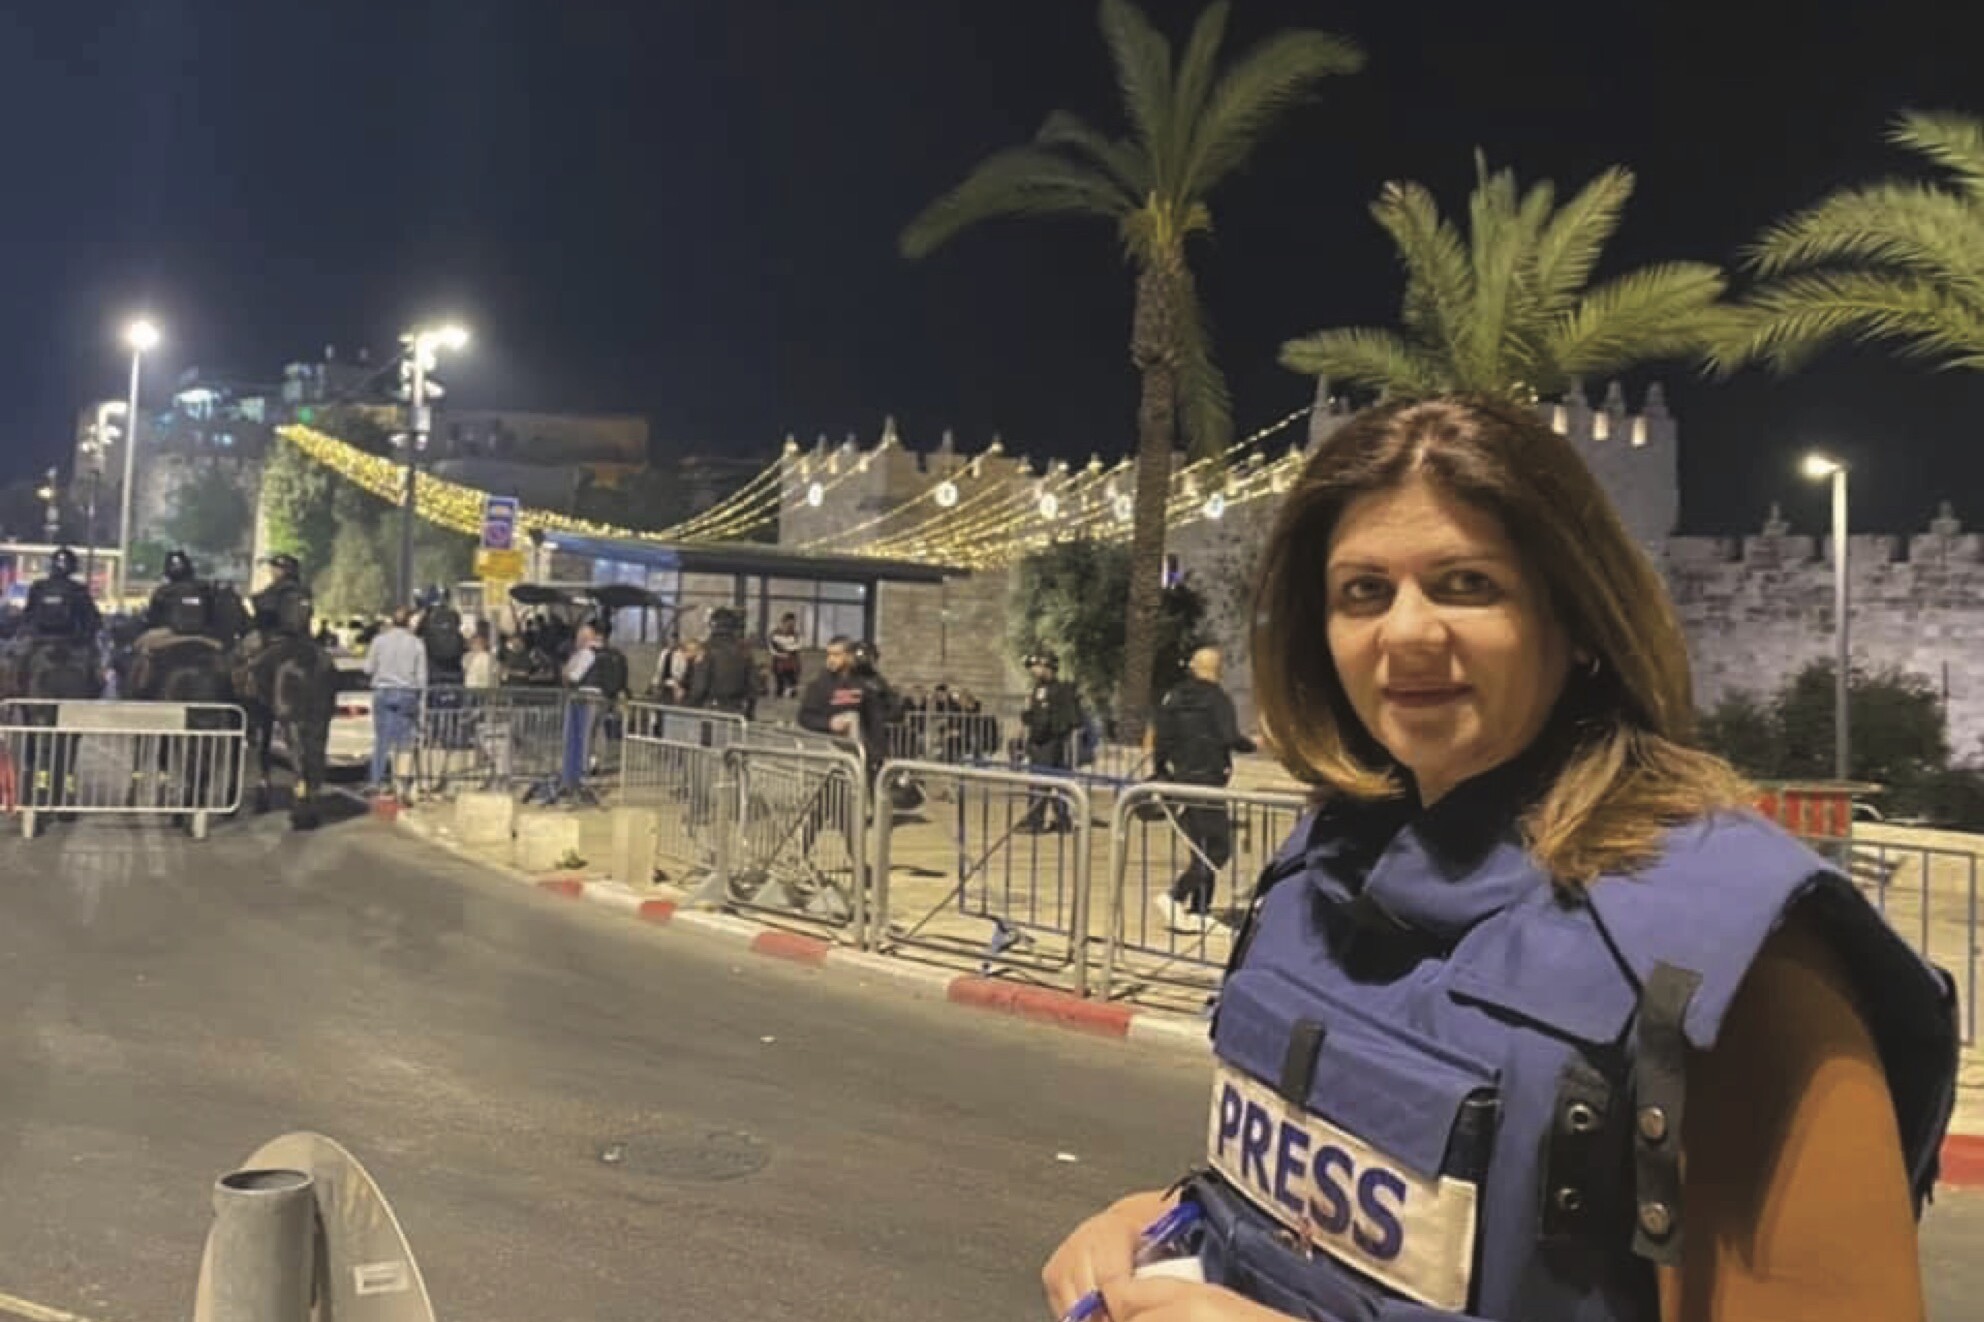 Al Jazeera journalist Shireen Abu Akleh.